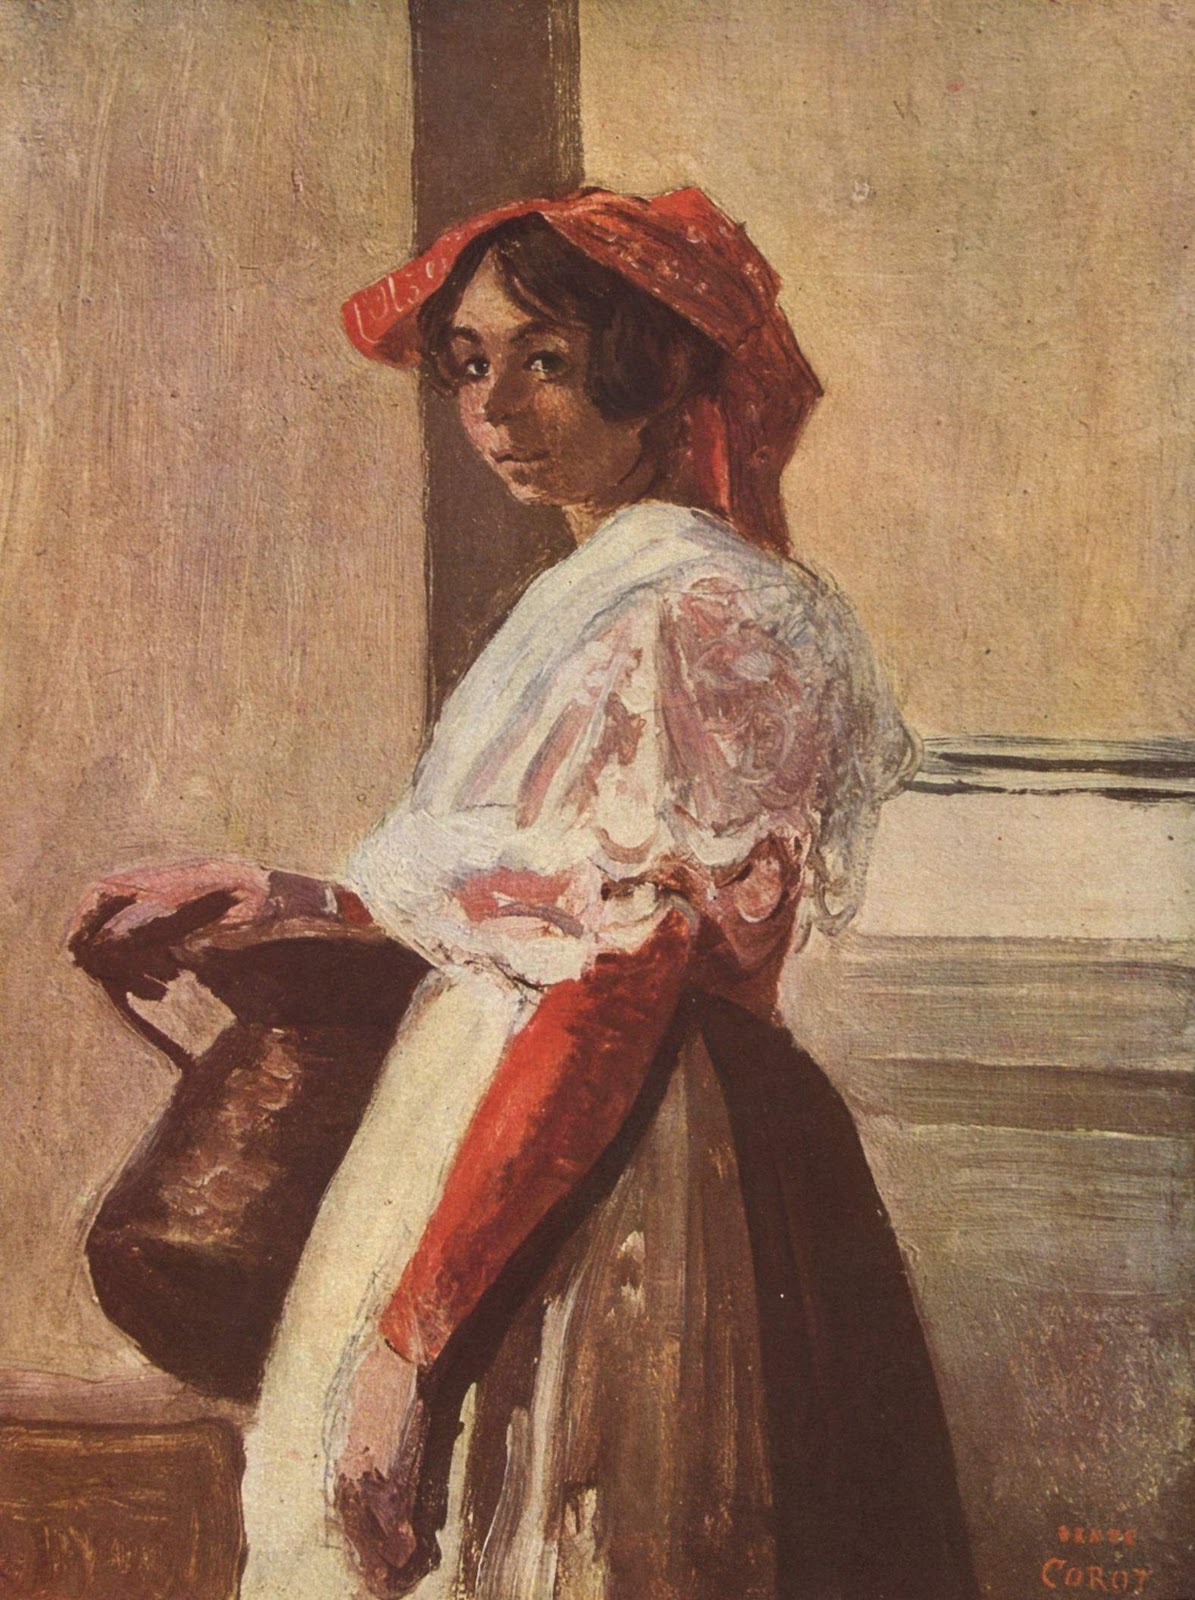 Jean+Baptiste+Camille+Corot-1796-1875 (235).jpg